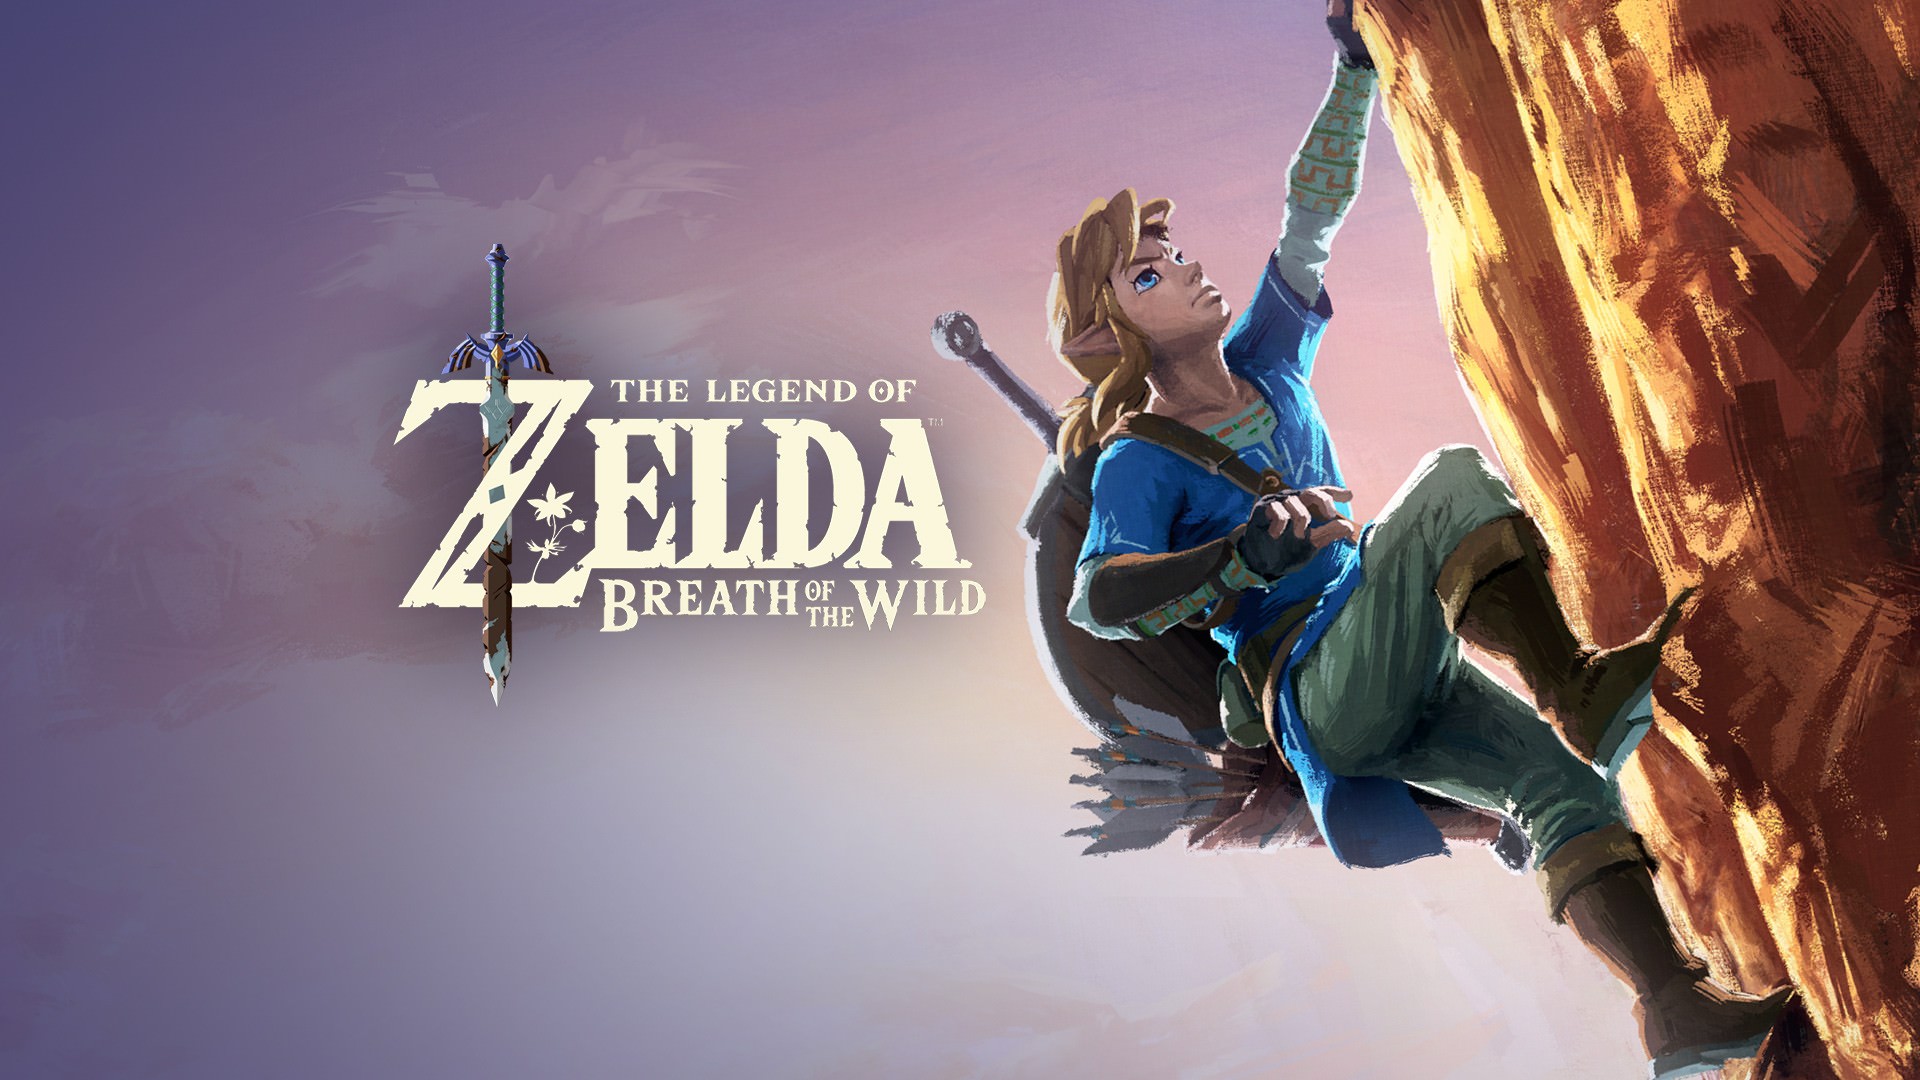 Legend Of Zelda Breath Of The Wild Wallpaper - Zelda Birth Of The Wild , HD Wallpaper & Backgrounds